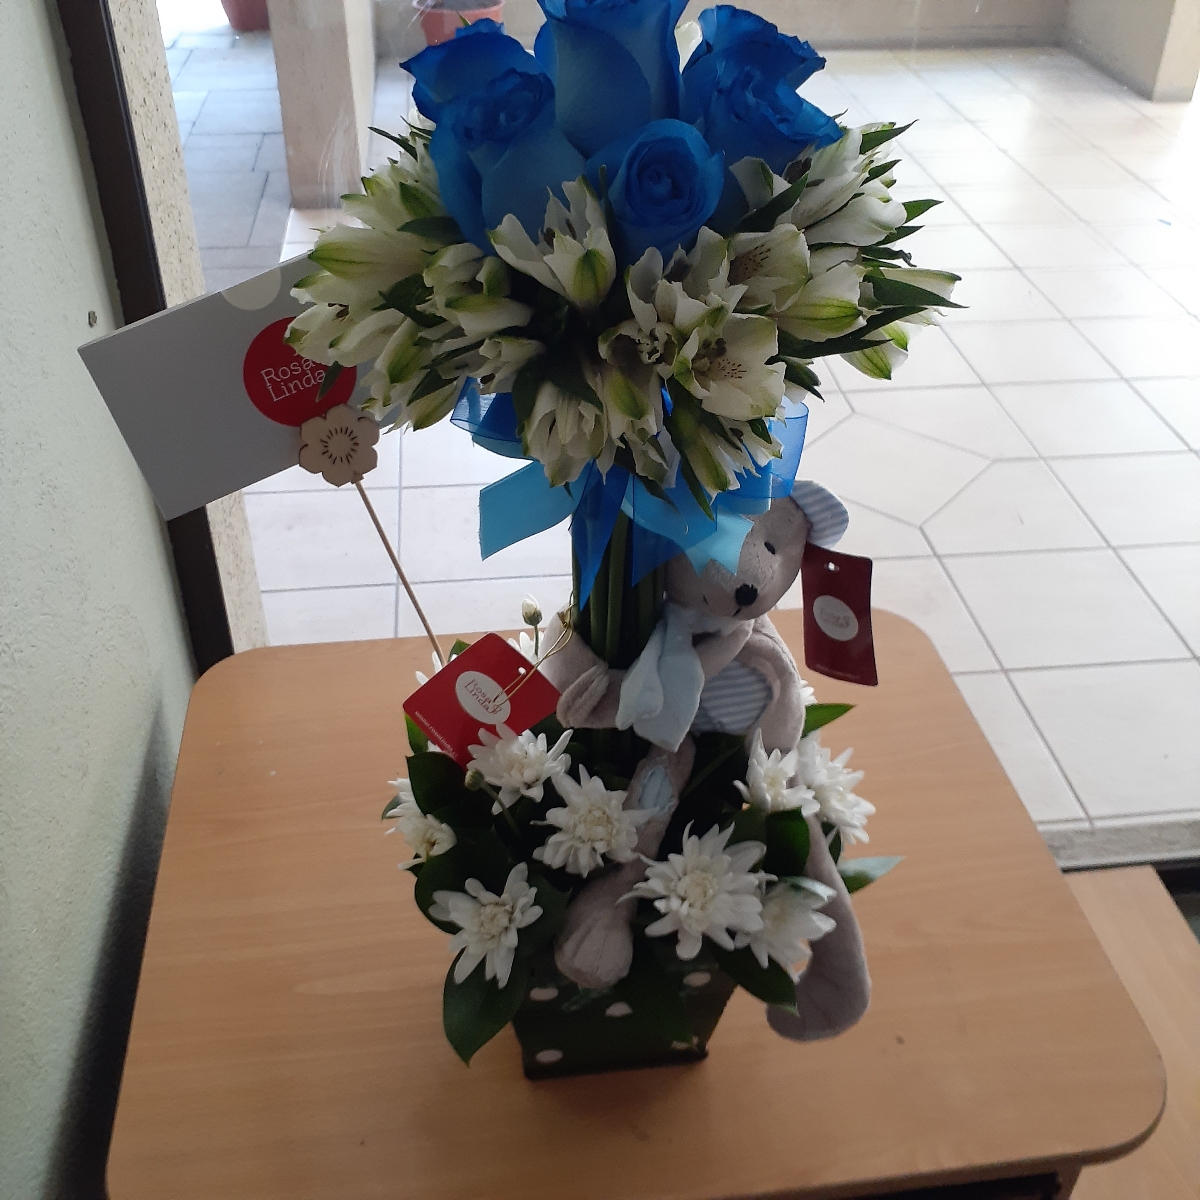 Arbolito con peluche Osito - Arreglo floral con rosas azules, astromelias y maules - Pedido 243843